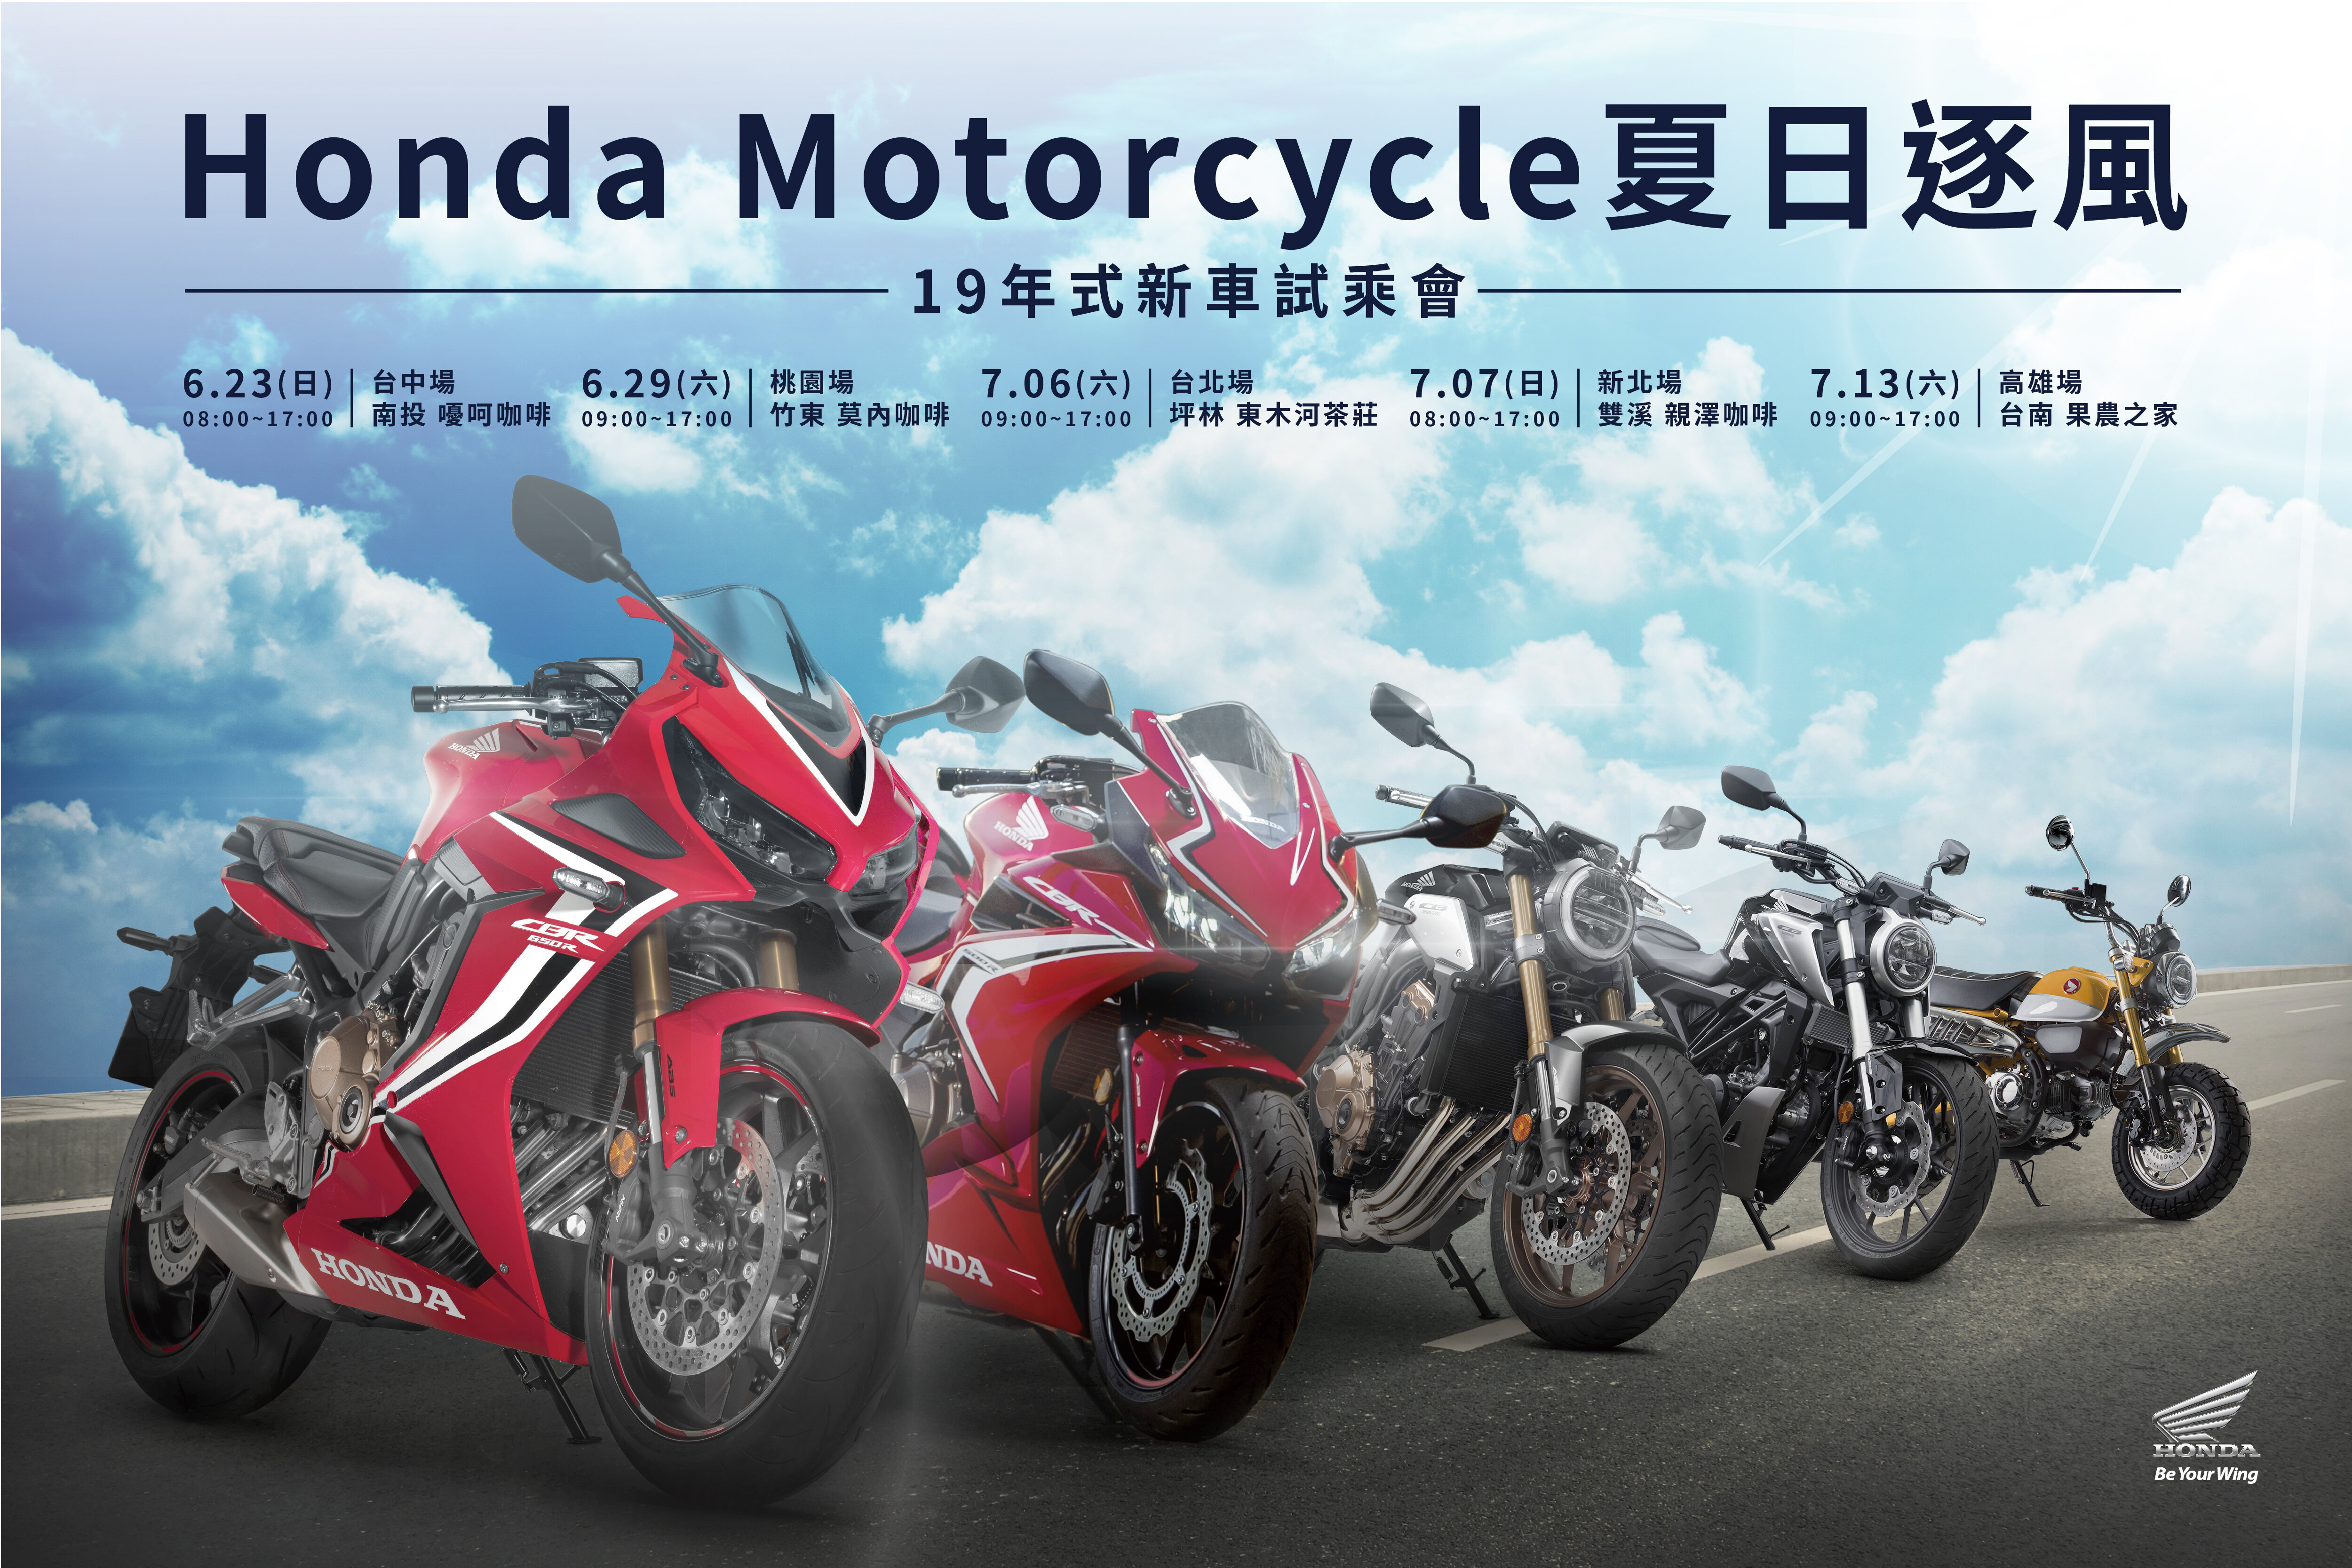 Honda Motorcycle夏日逐風新車試乘會